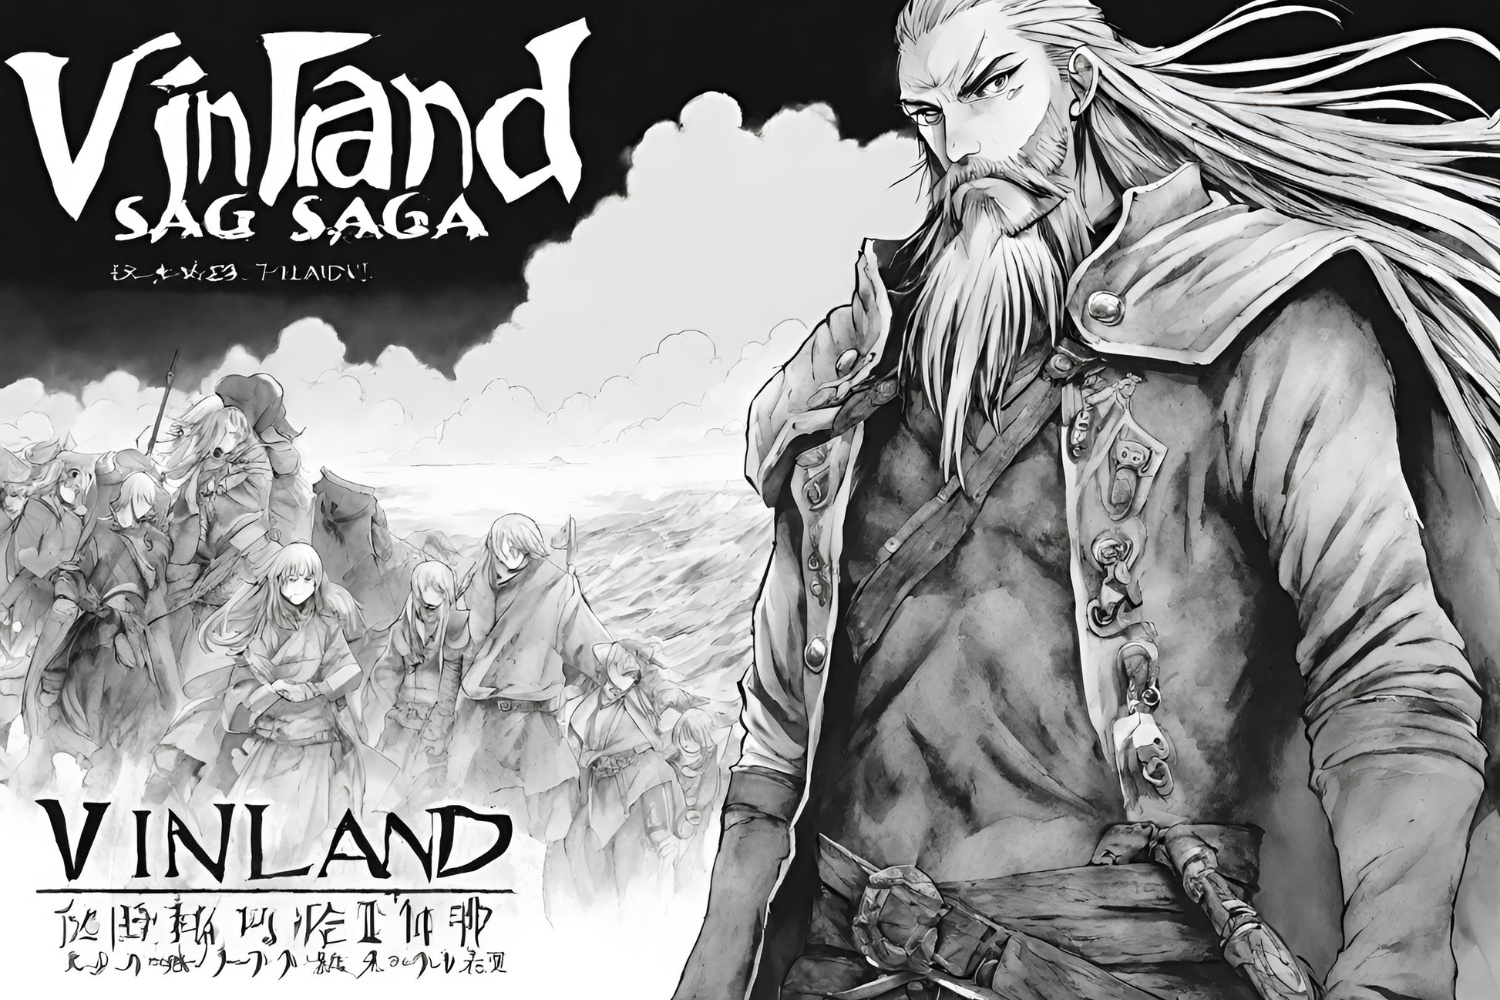 Vinland Saga Manga Coming to an End